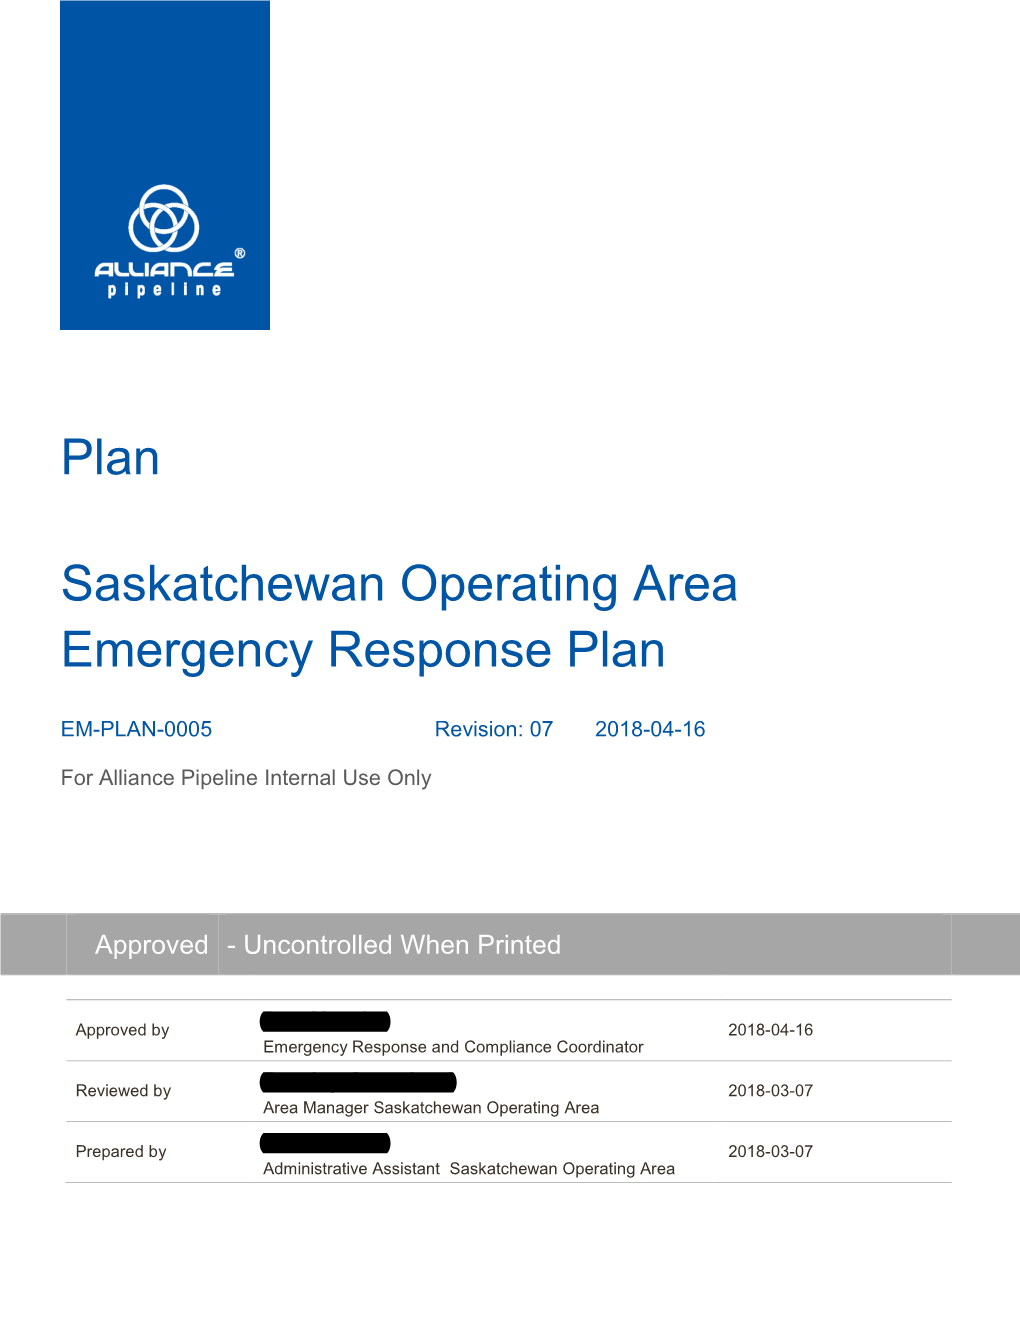 Saskatchewan Operating Area Emergency Response Plan